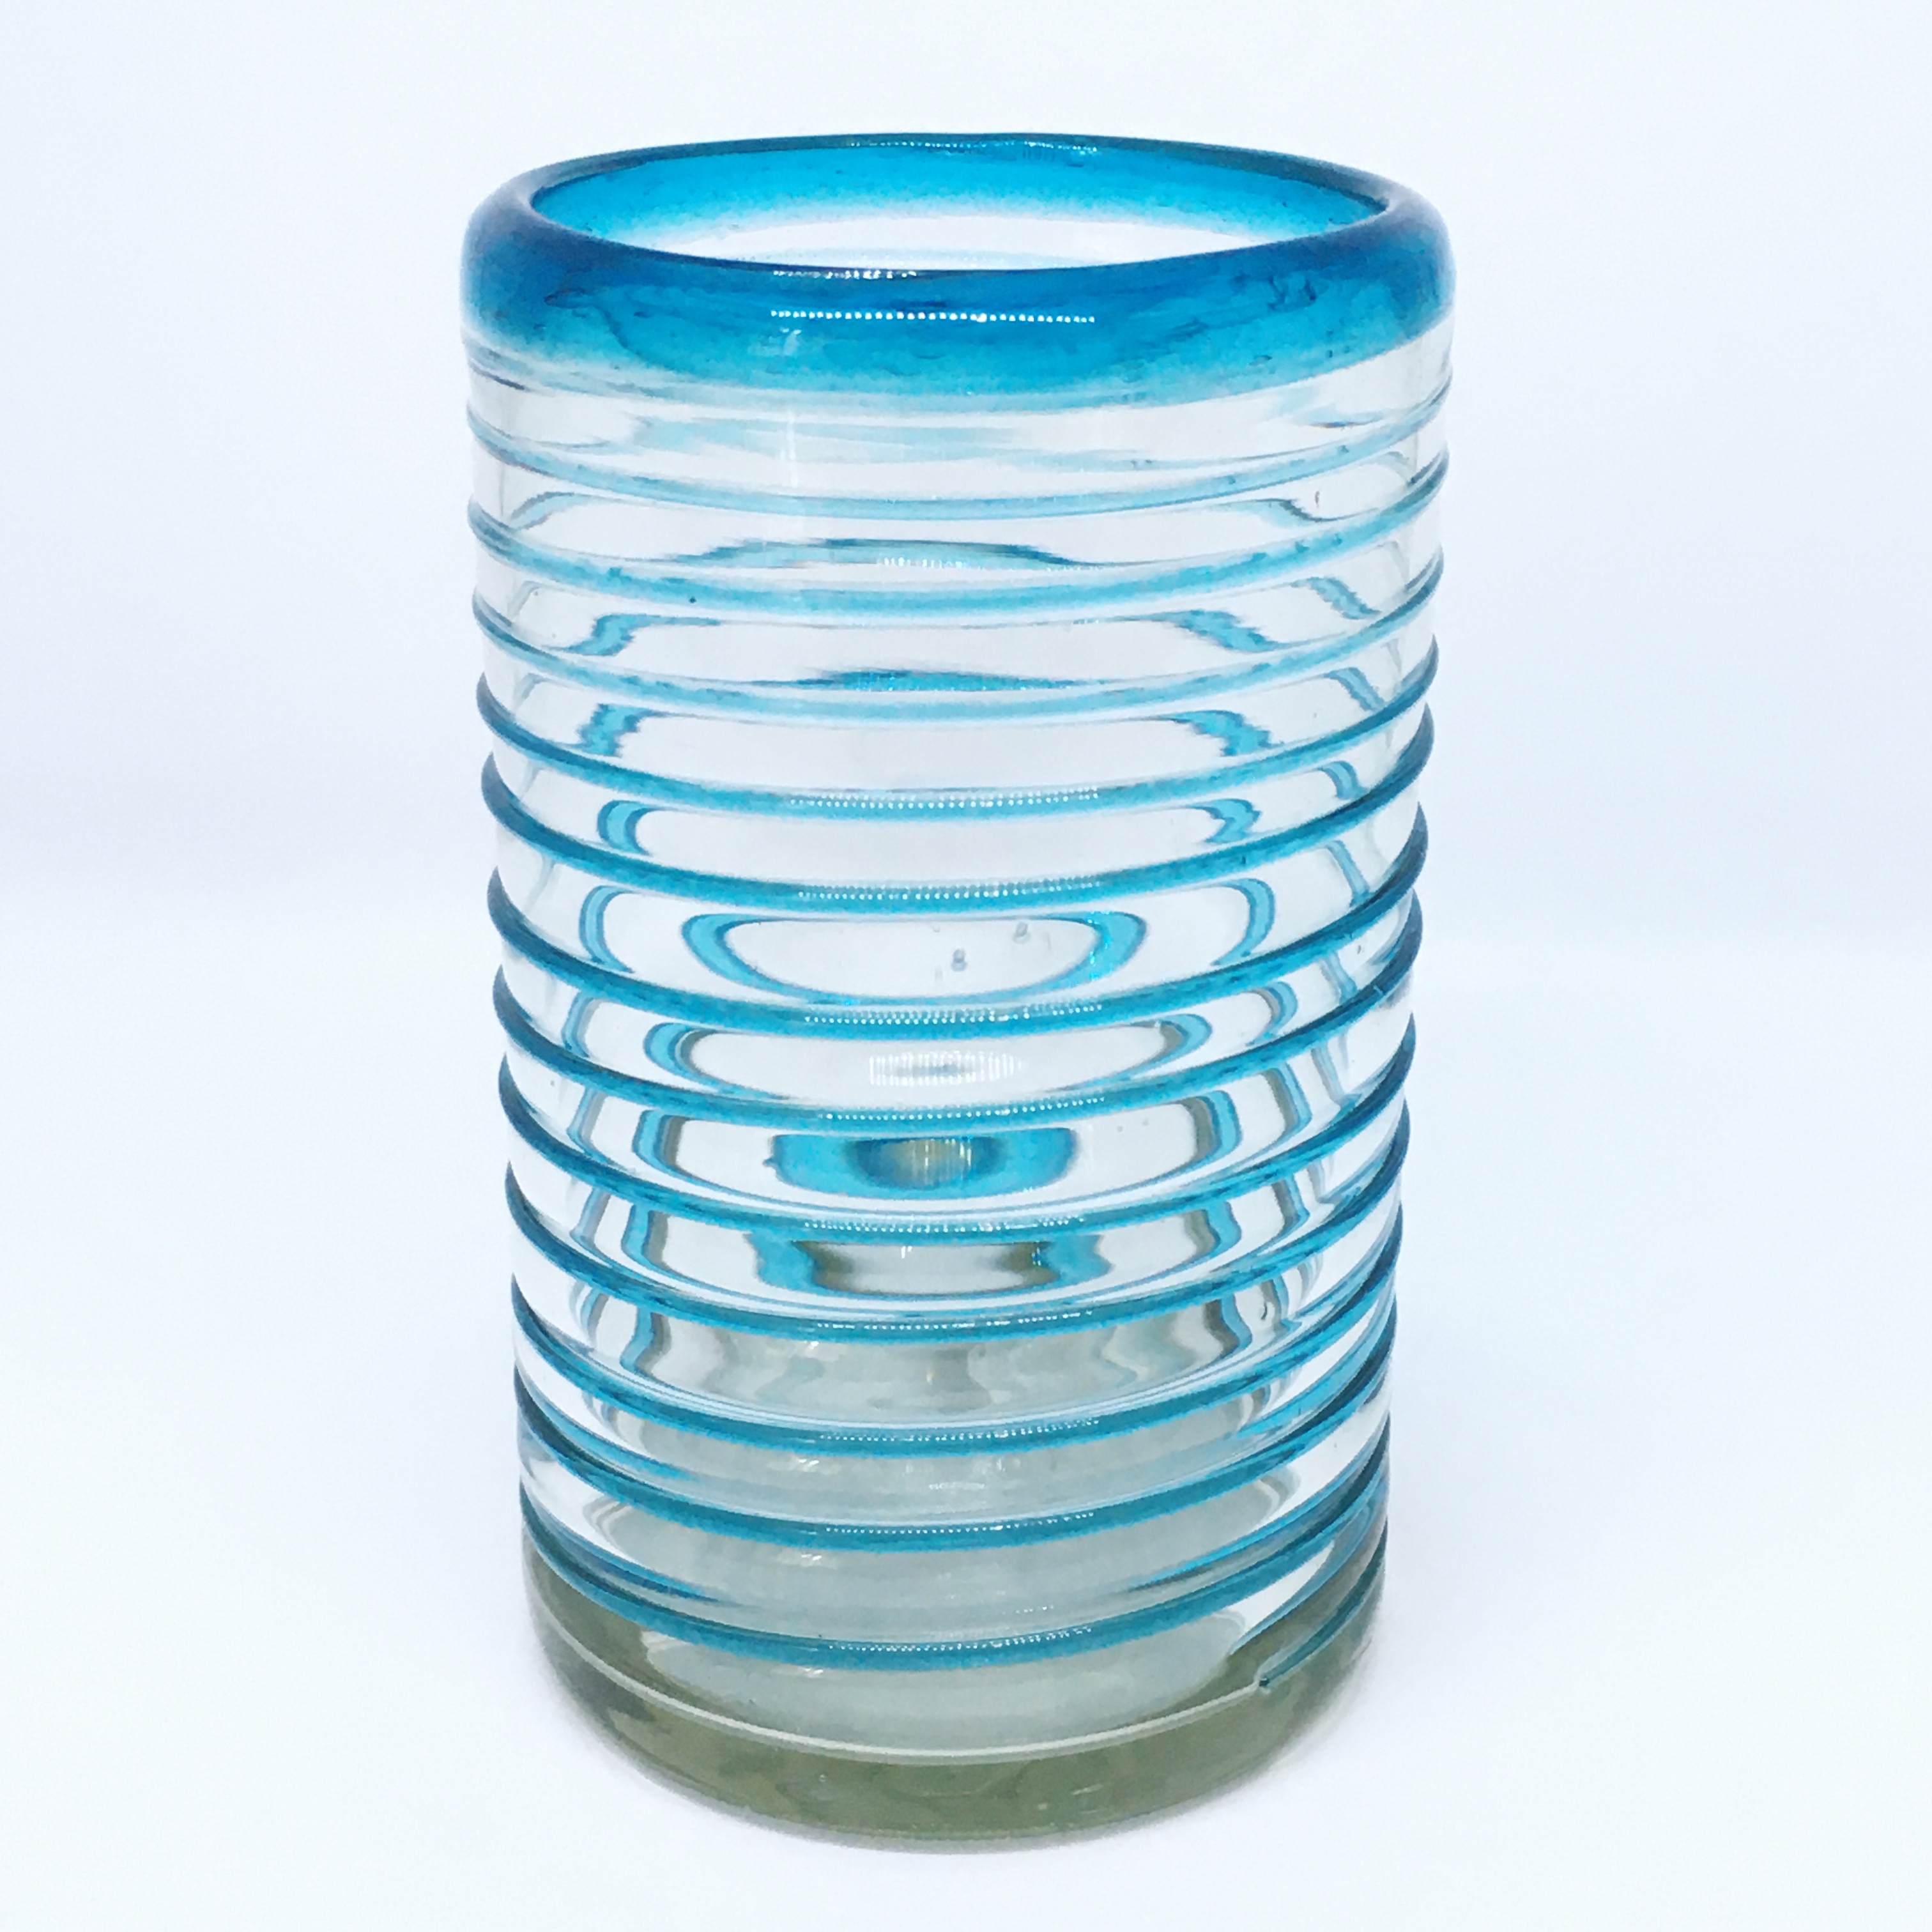 VIDRIO SOPLADO / vasos grandes con espiral azul aqua, 14 oz, Vidrio Reciclado, Libre de Plomo y Toxinas